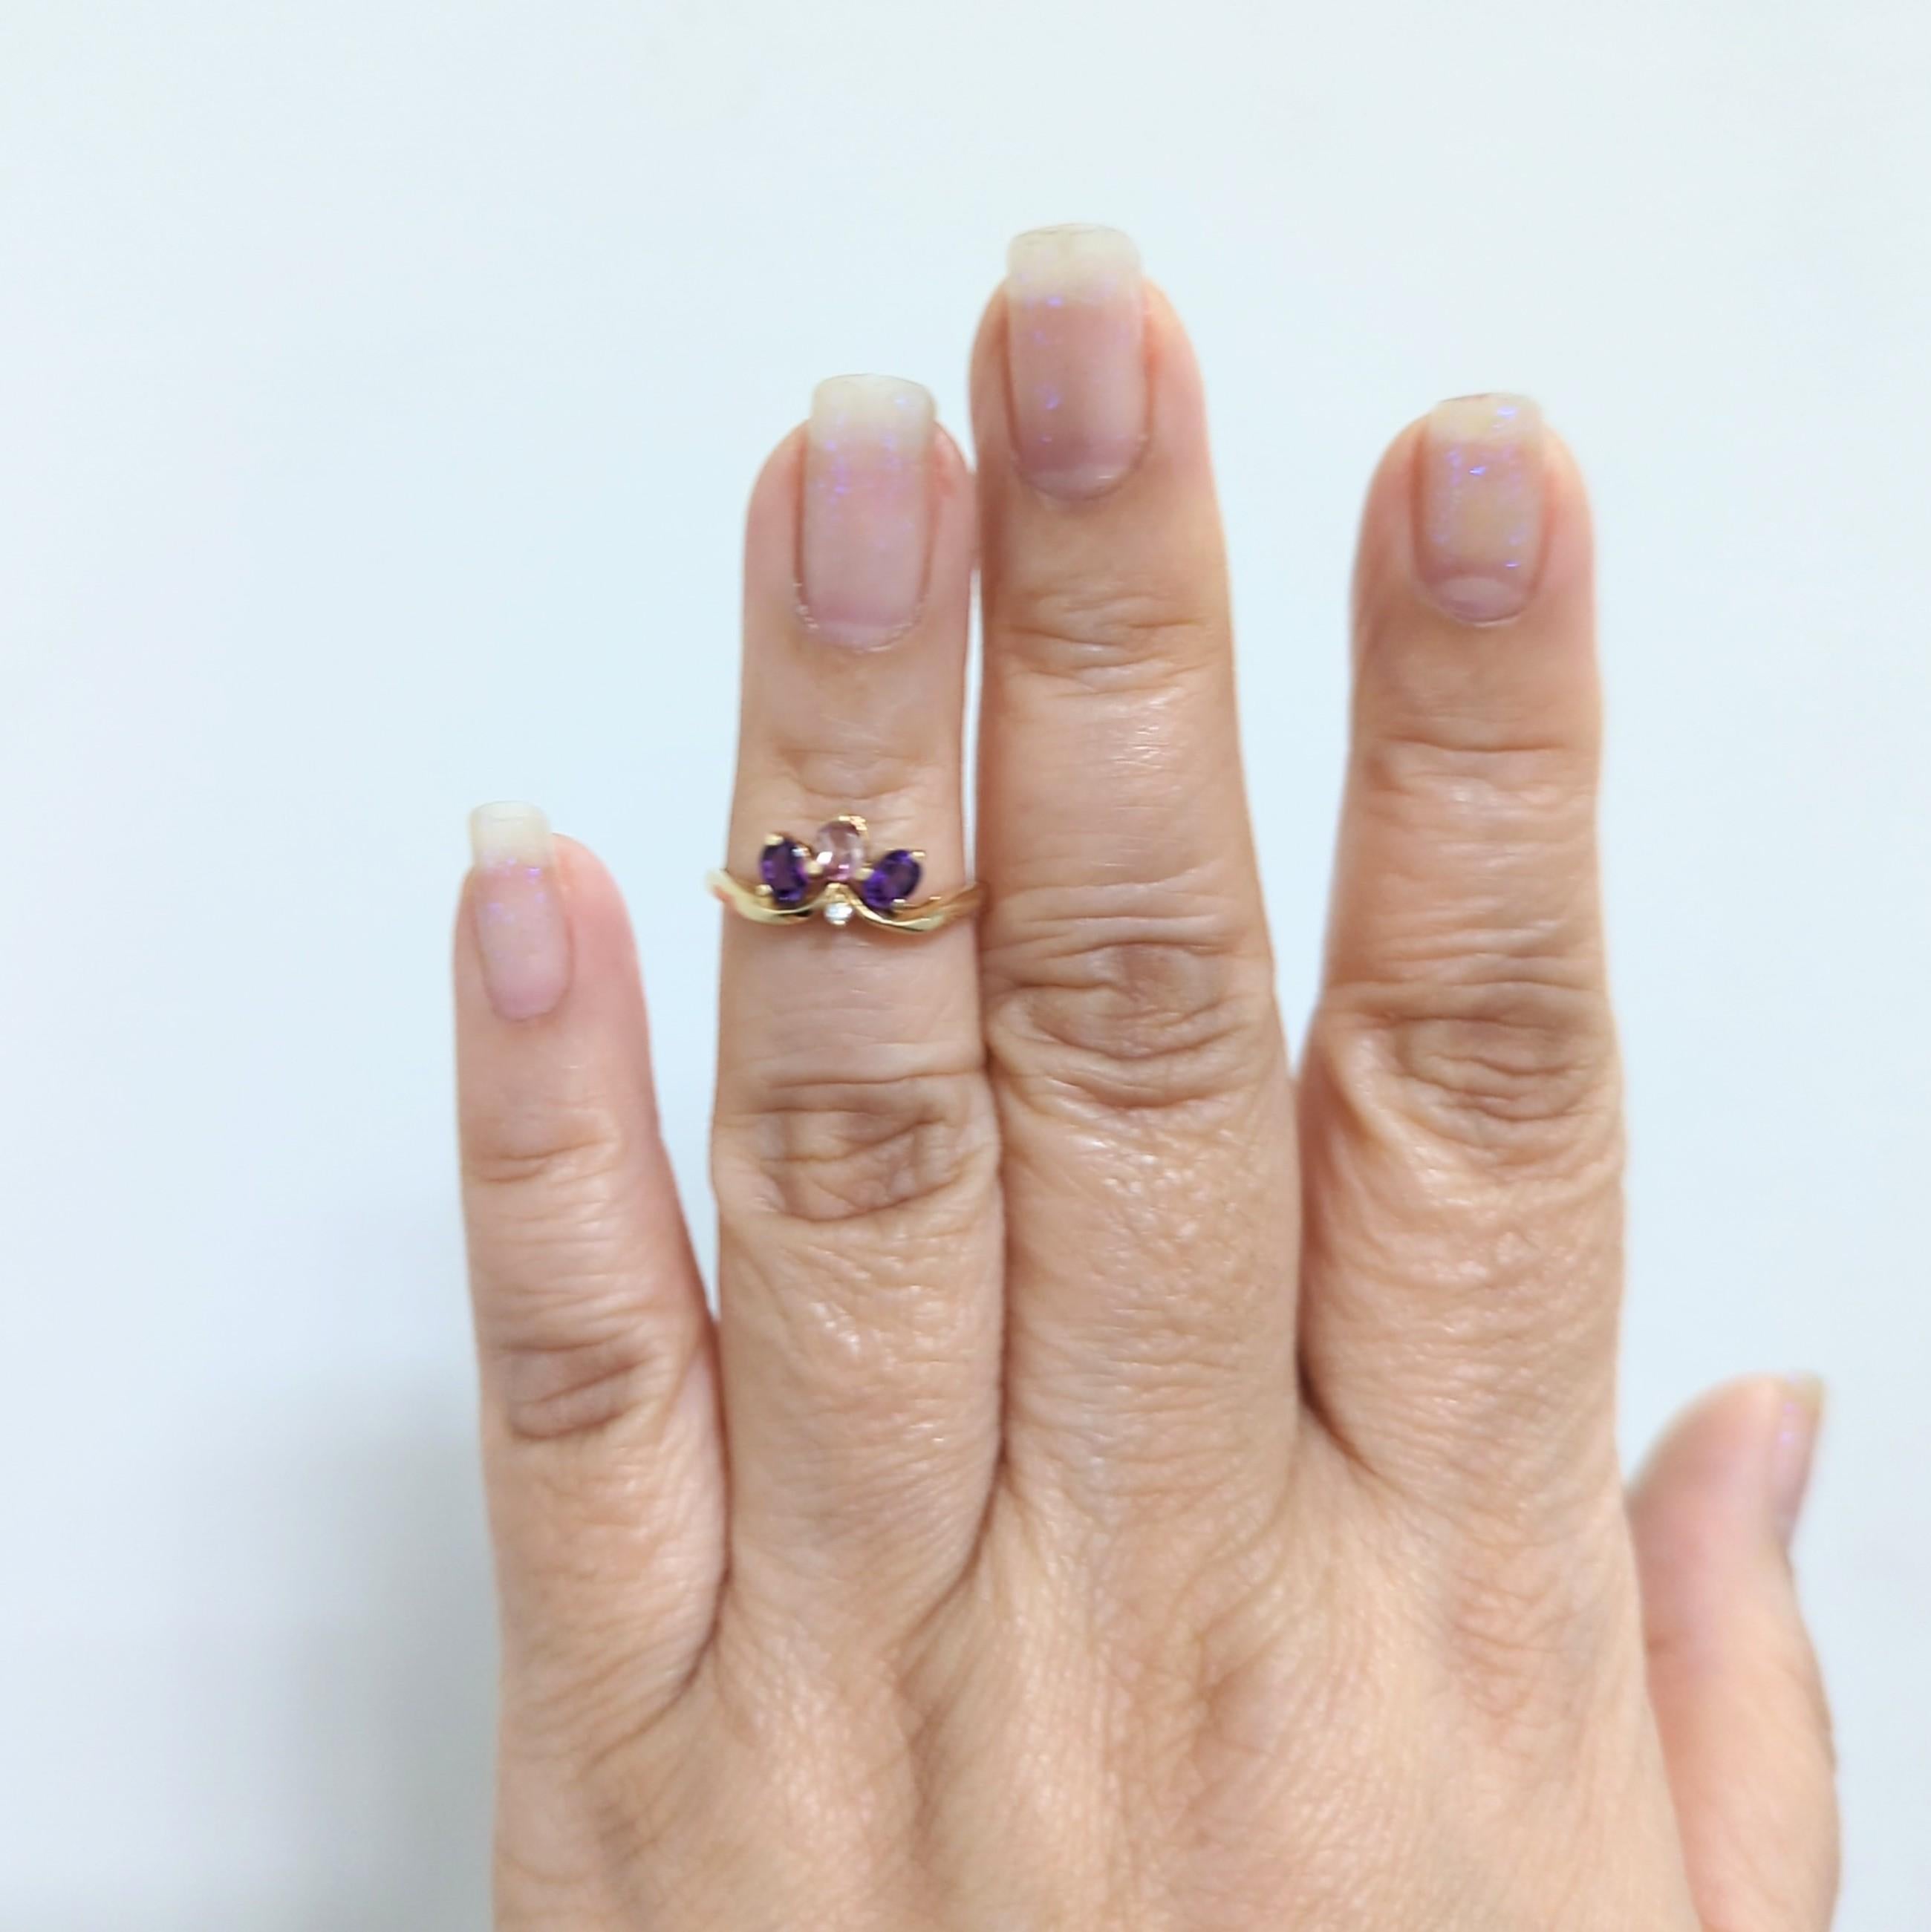 Schöner Kabana Ring mit zwei lila Steinen, einem rosa Stein und einem runden Diamanten von 0,01 Karat.  Handgefertigt in 14k Gelbgold.  Ringgröße 6.